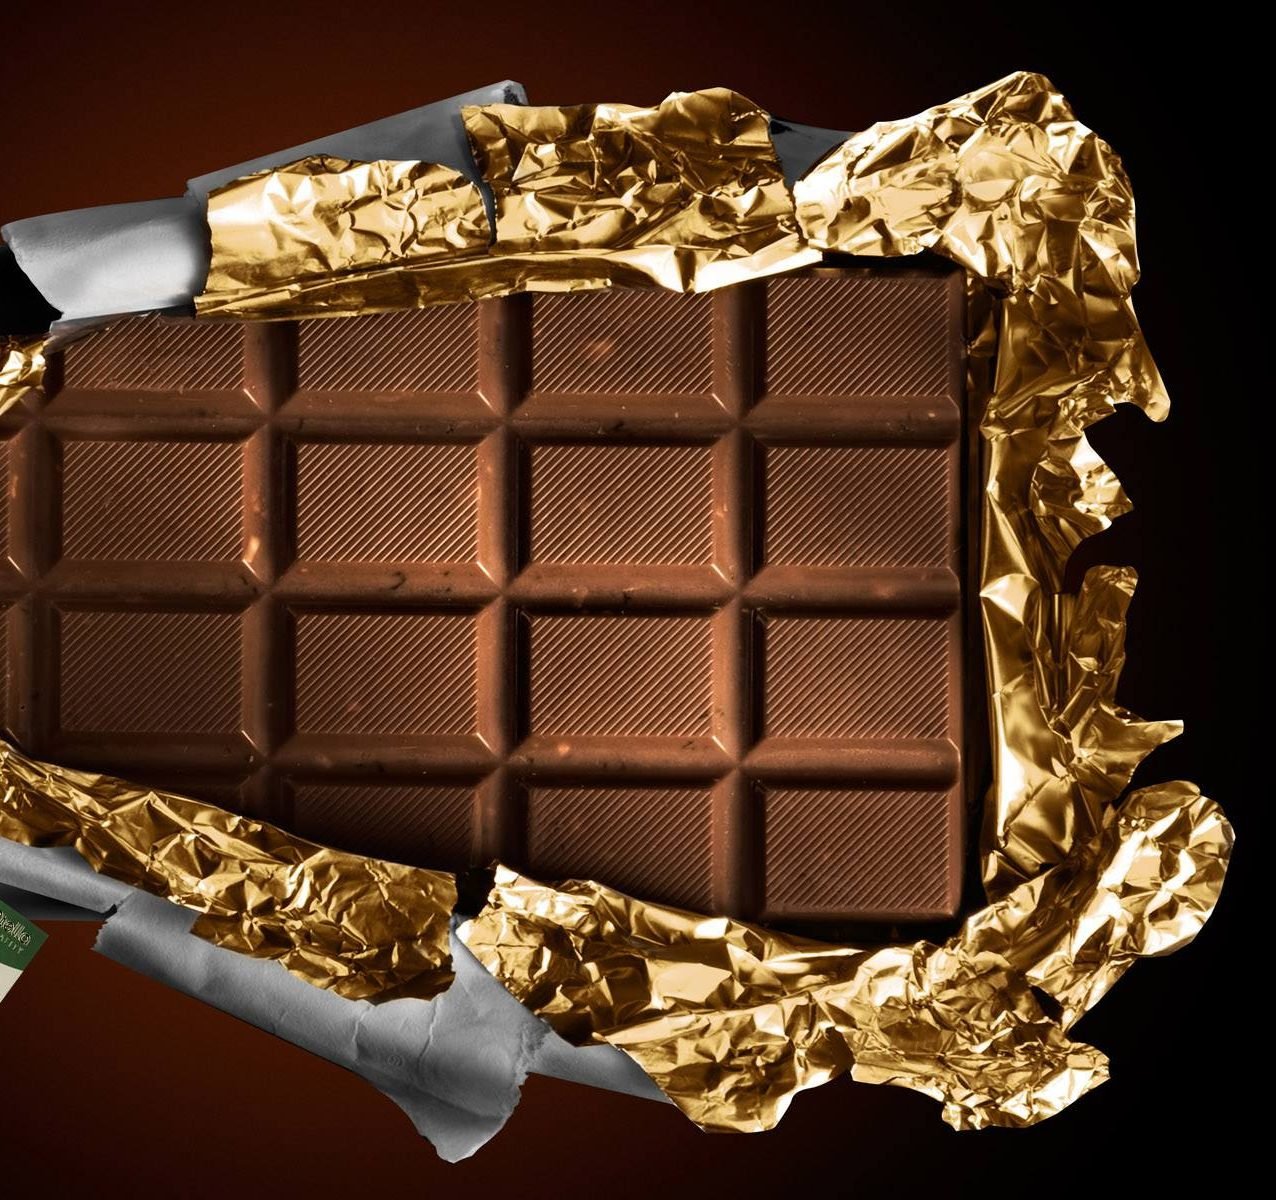 În mai multe țări din Europa ciocolata Kinder este retrasă din cauza suspiciunilor de contaminare cu salomonella